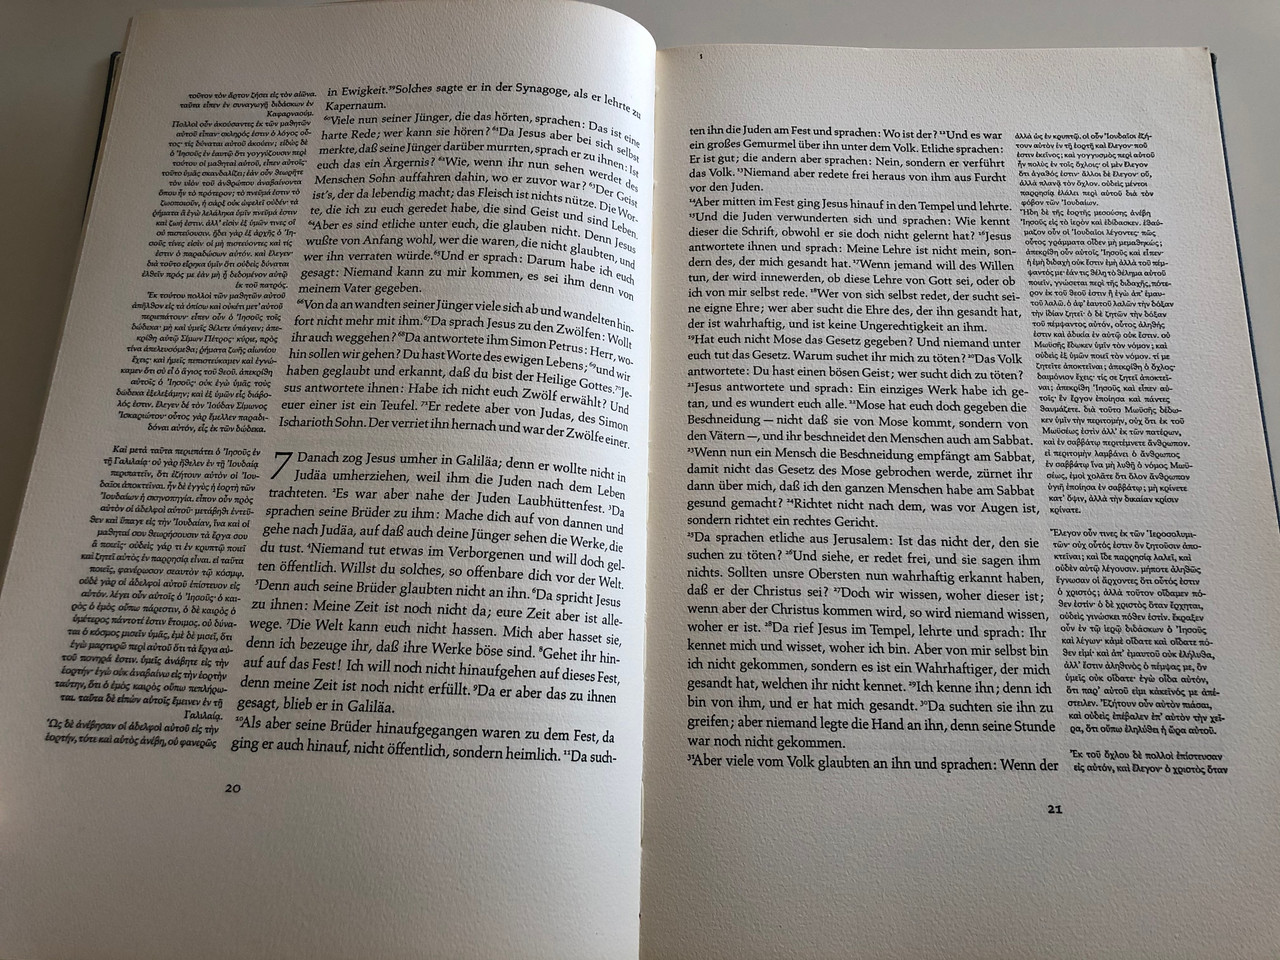 Das Evangelium nach / German Gospel according John / German - Greek parallel text - bibleinmylanguage